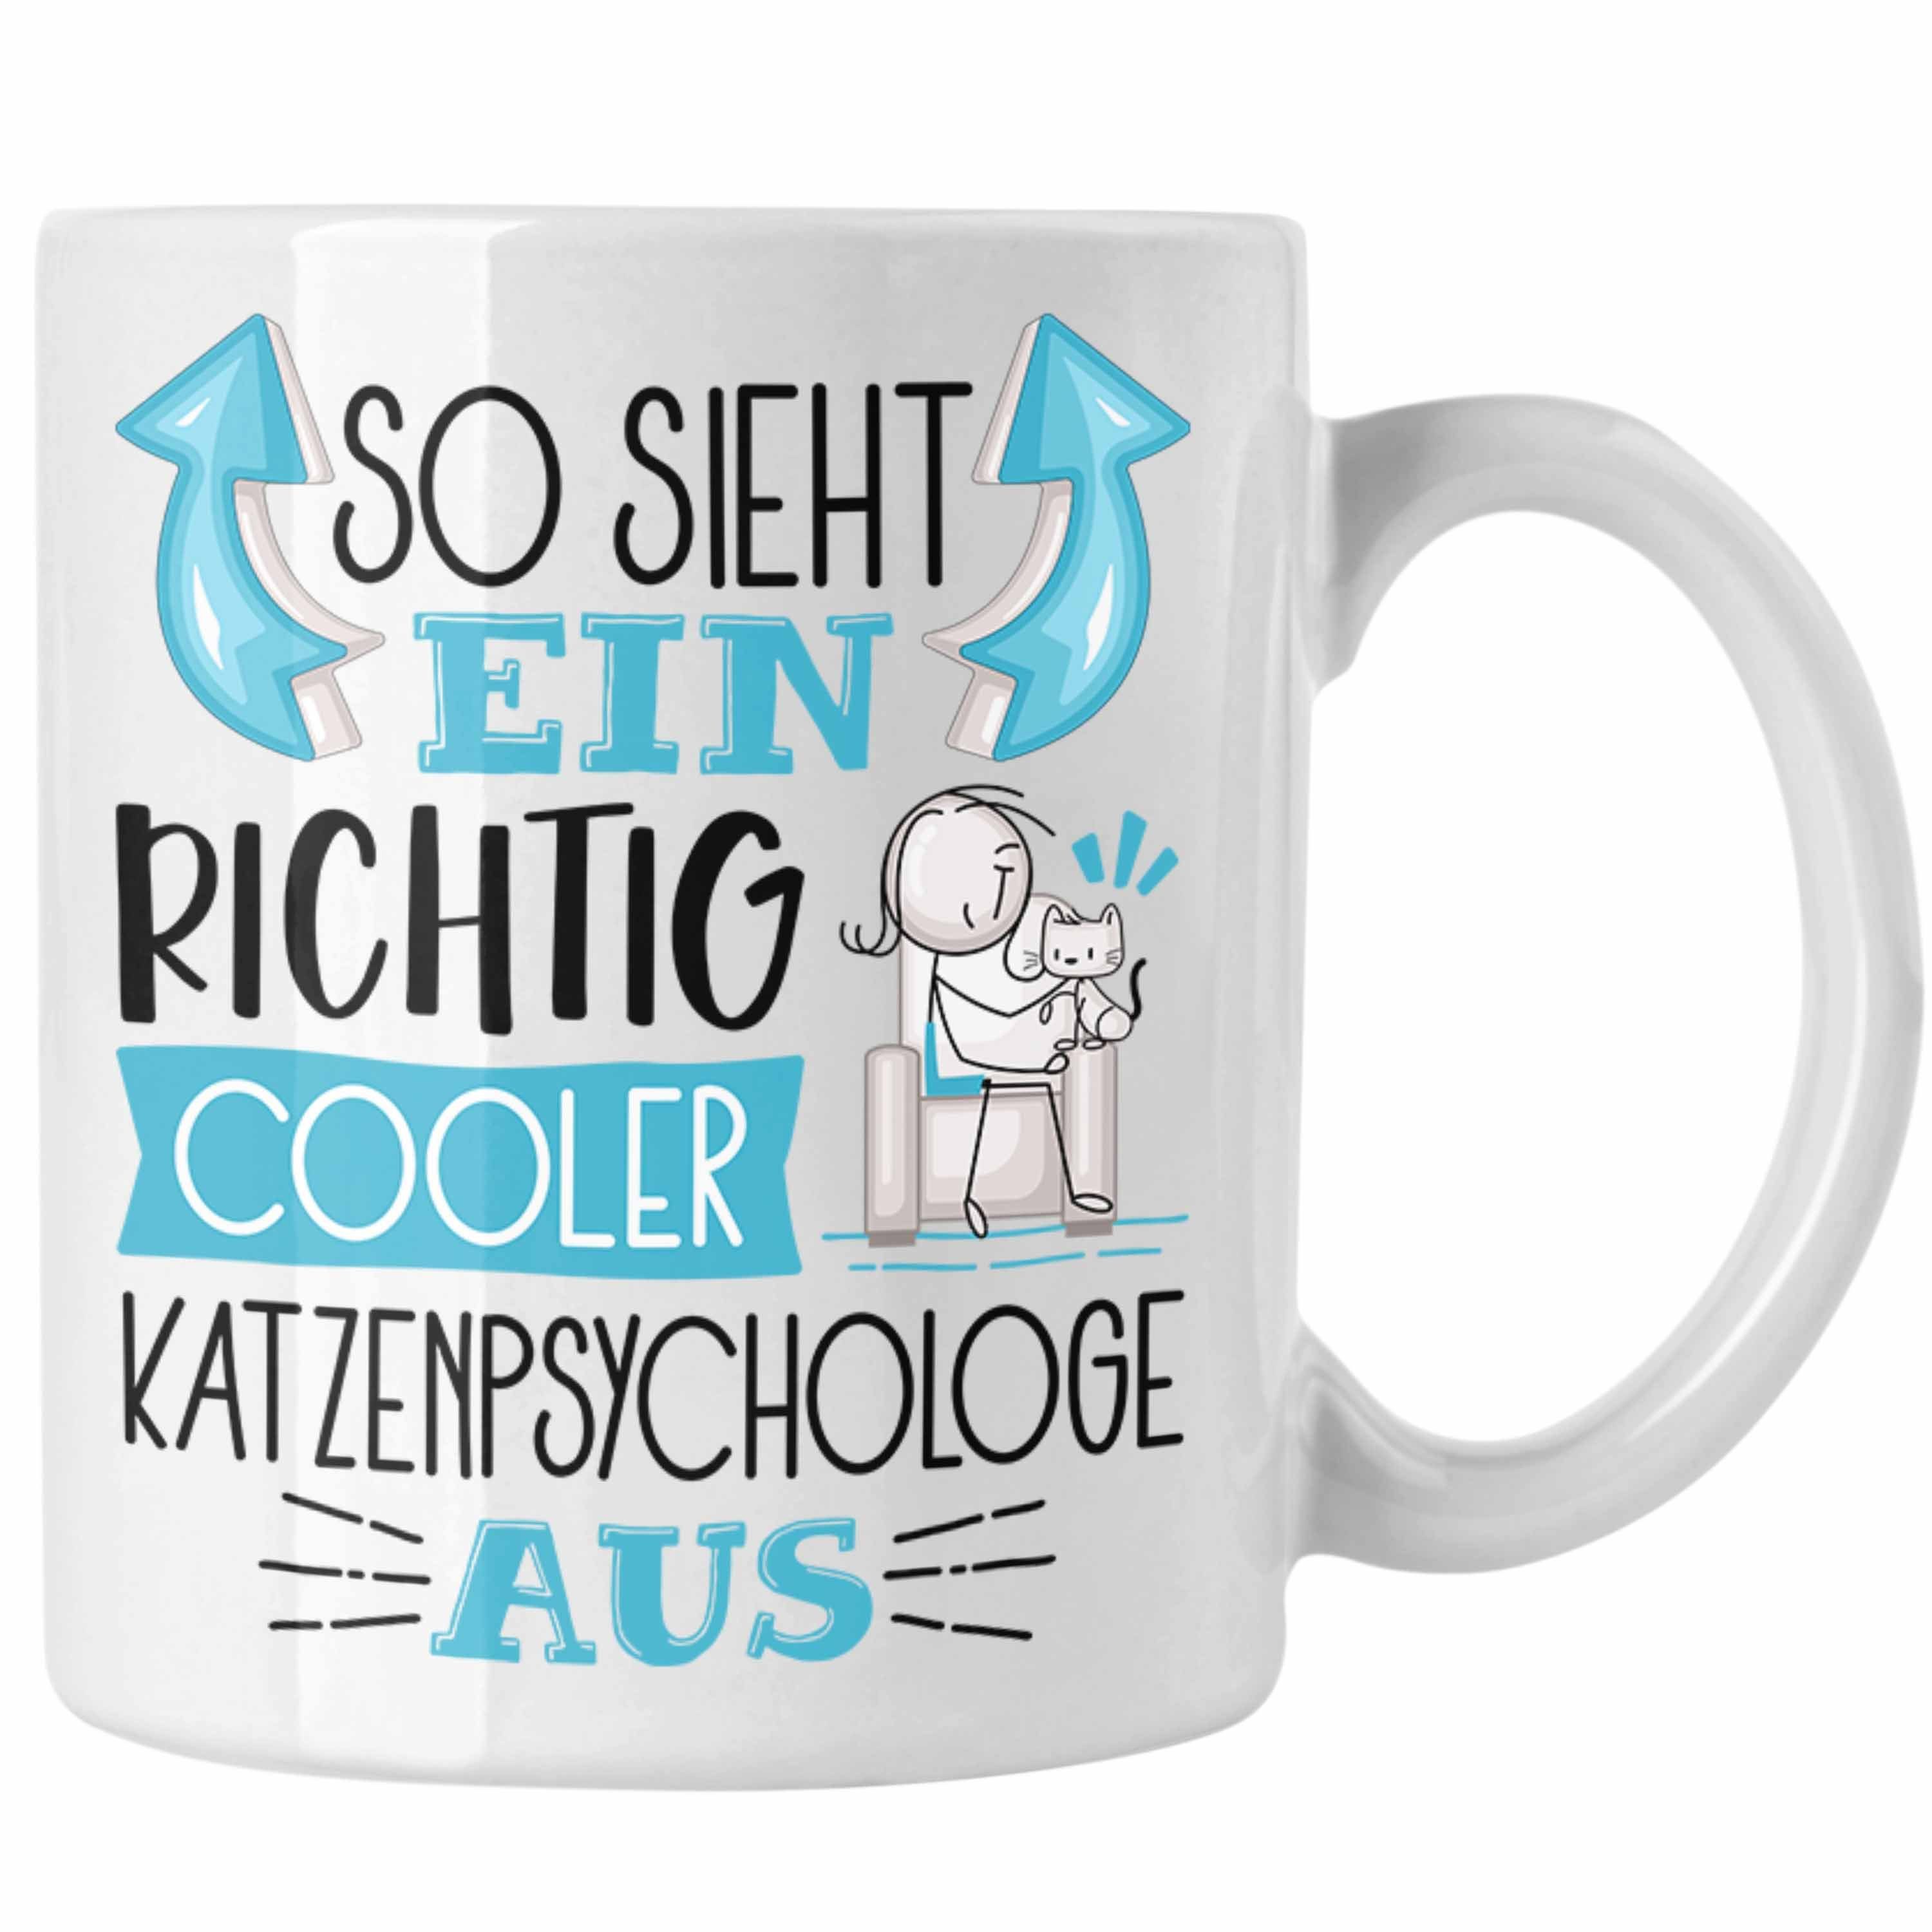 So Richtig Tasse Au Tasse Cooler Katzenpsychologe Katzenpsychologe Trendation Ein Sieht Weiss